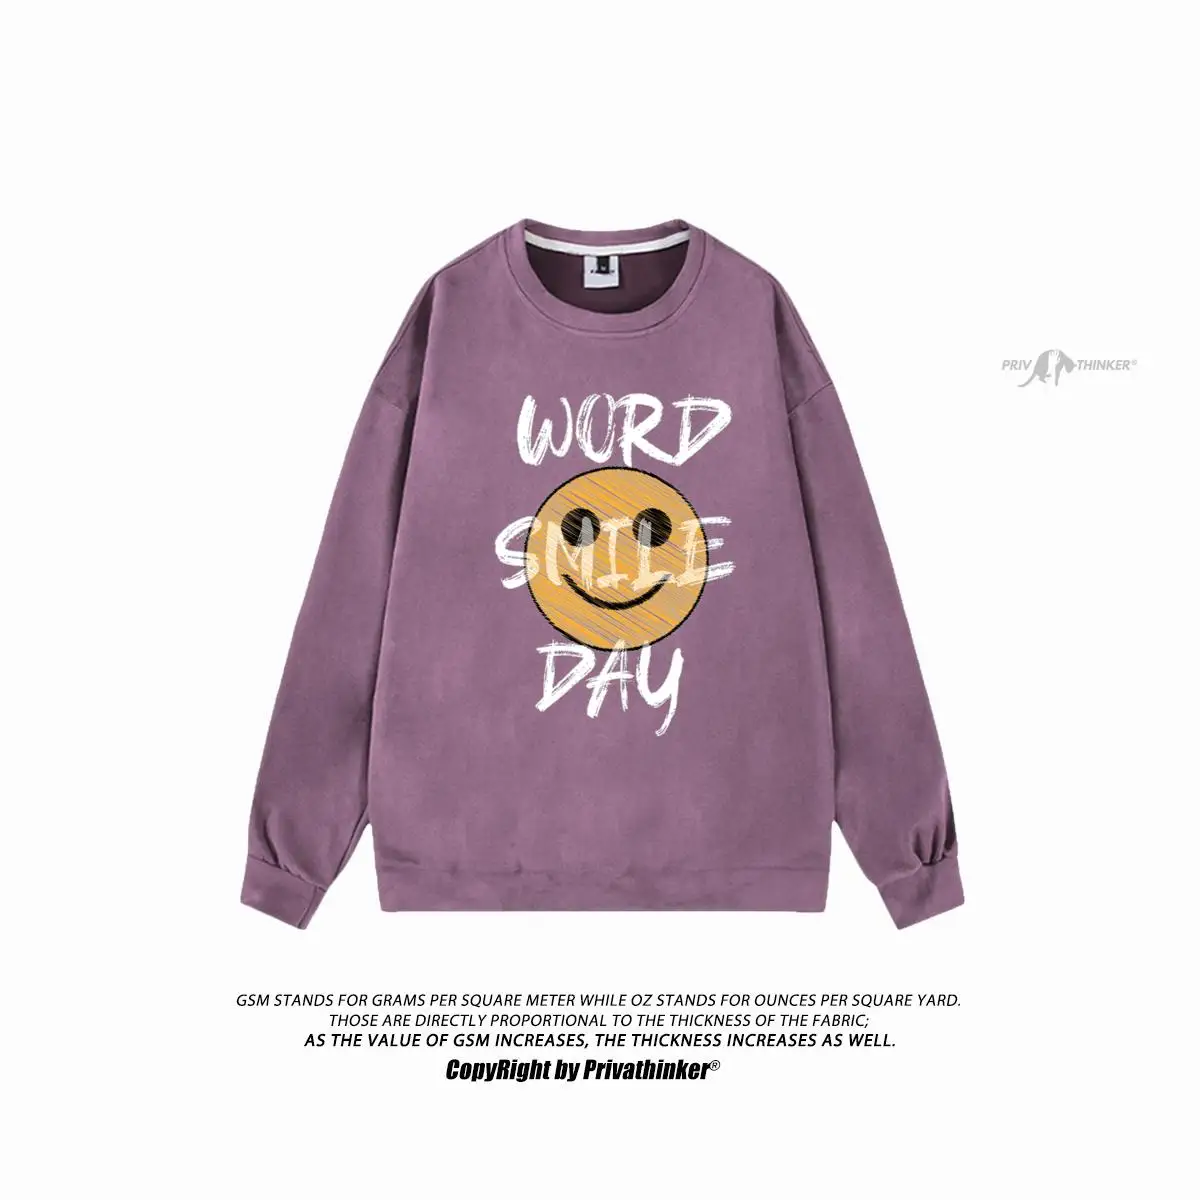 

Streetwear Unisex Oversized Pullovers WORD SMILE DAY Printed Women Casual Loose Sweatshirts Korean Suede Hoodies Tops